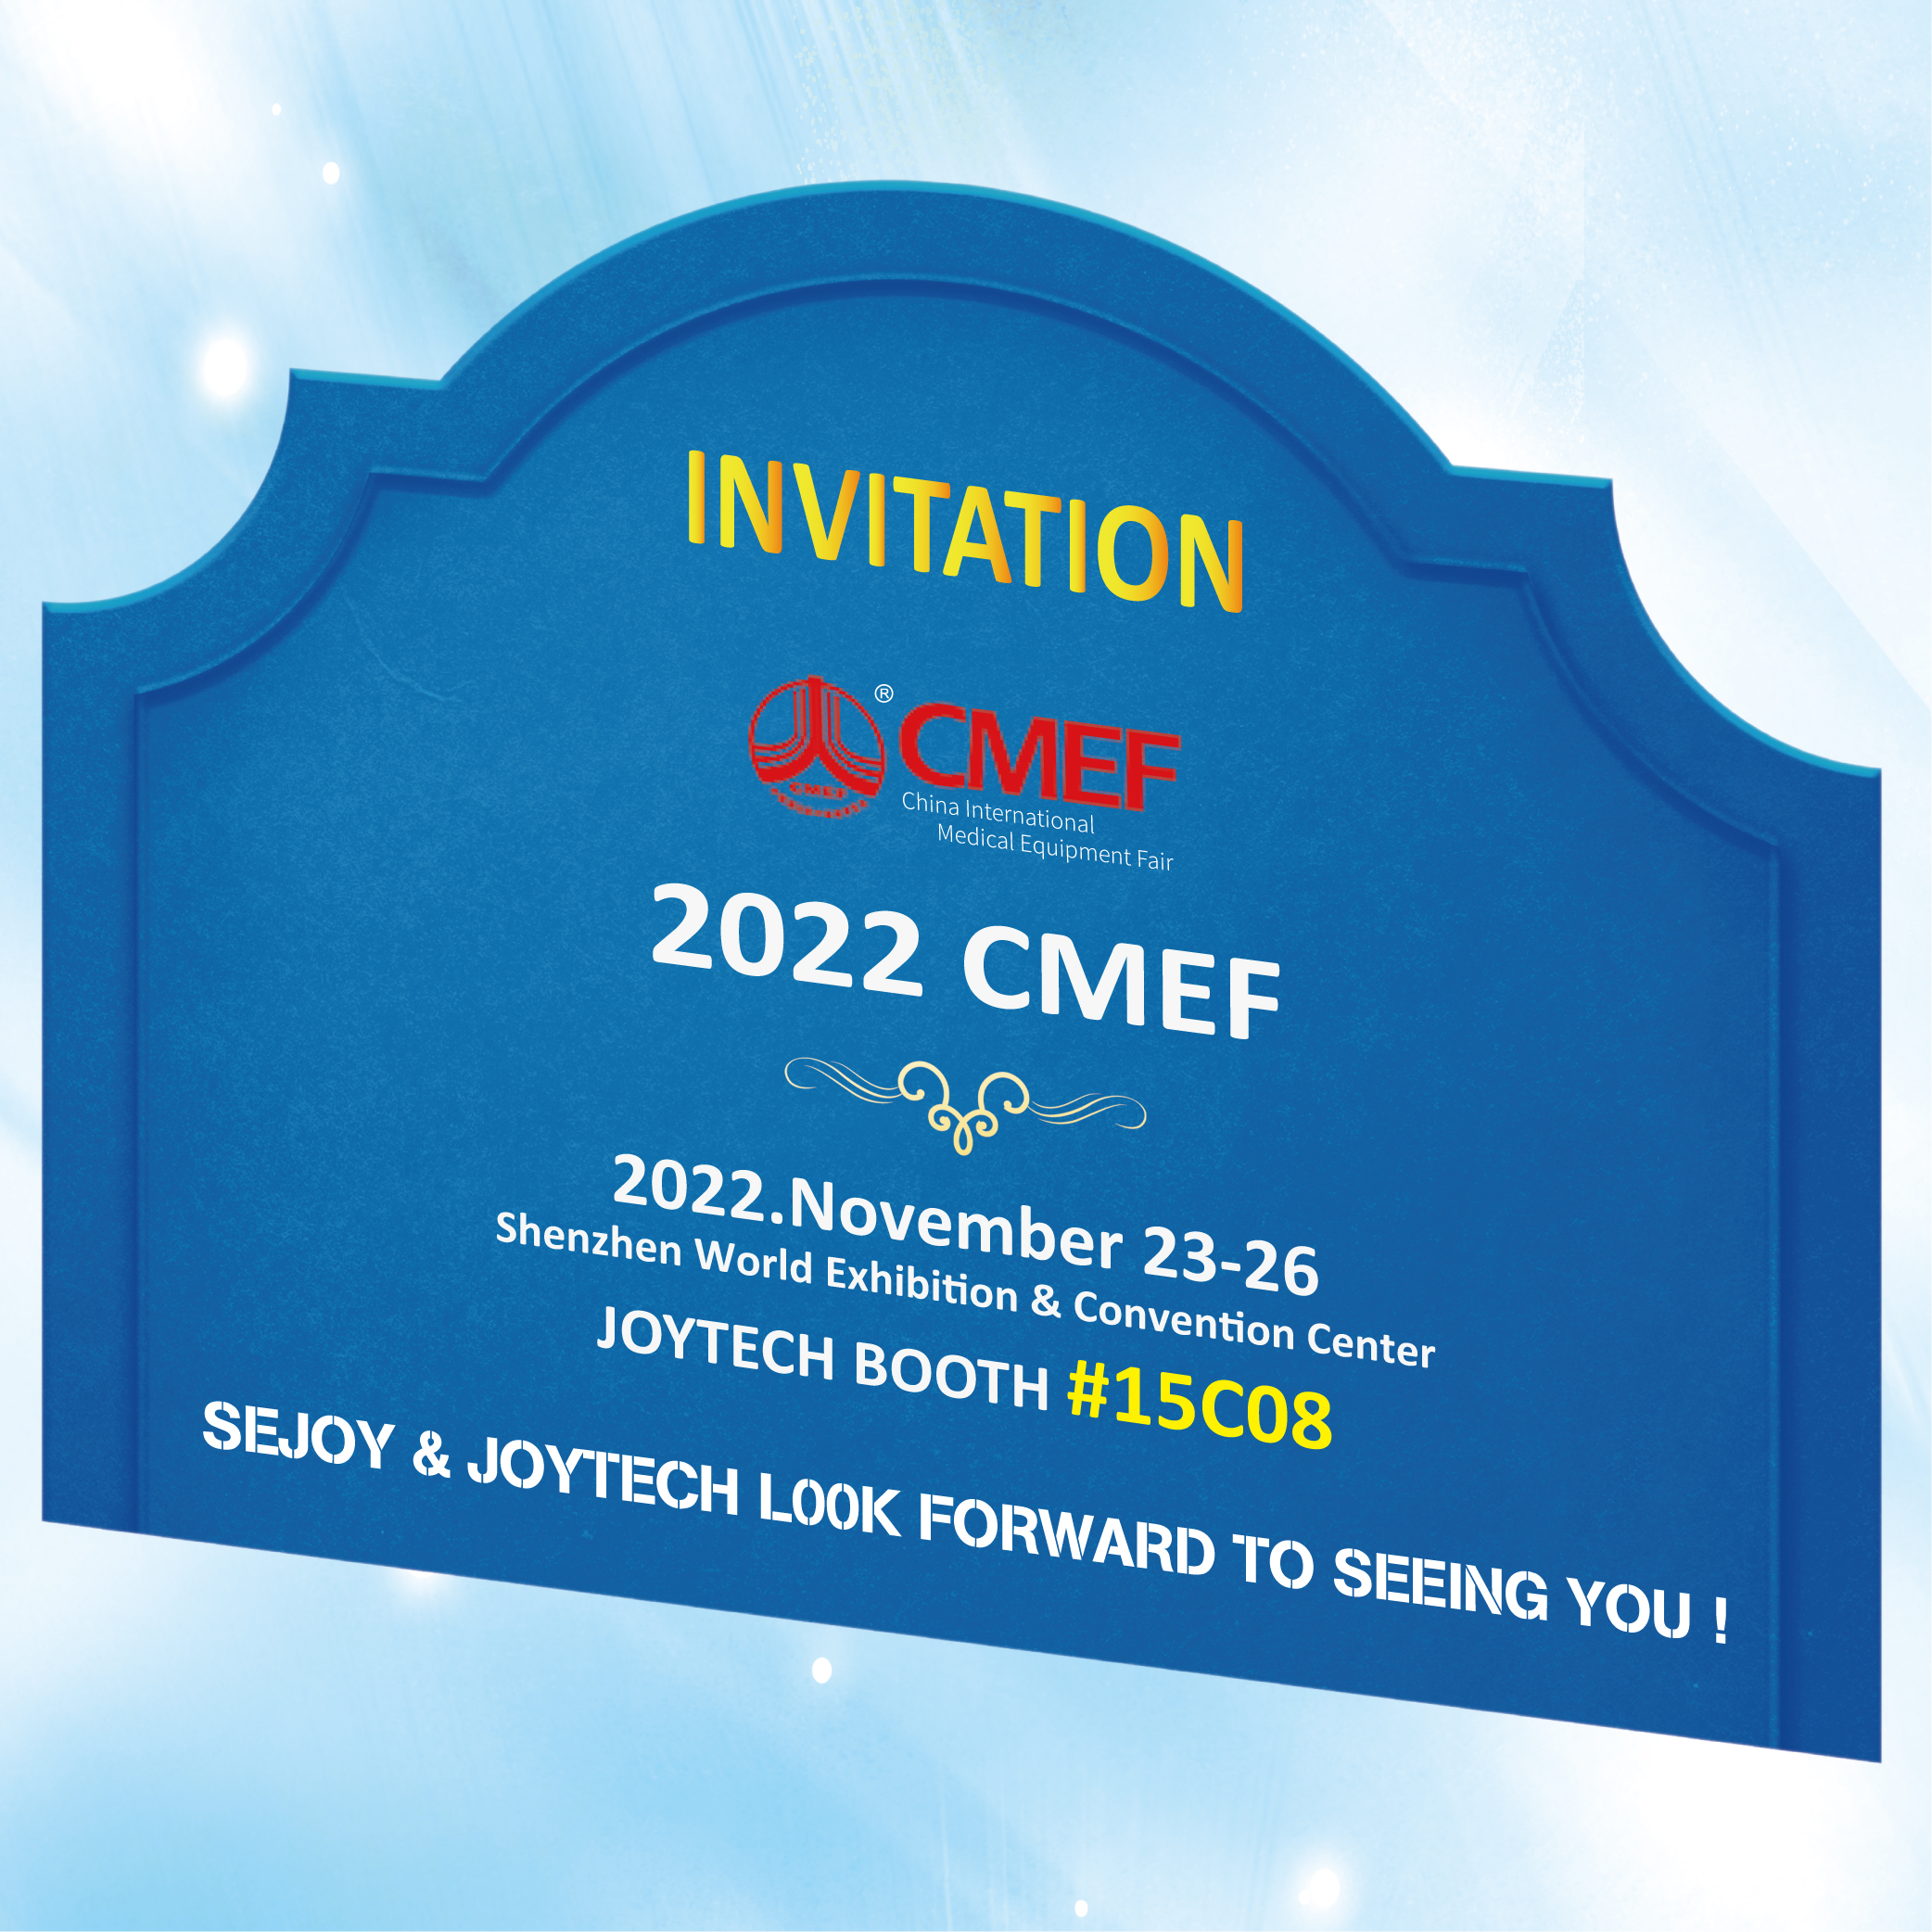 CMEF 2022 ખાતે જોયટેક બૂથમાં આપનું સ્વાગત છે